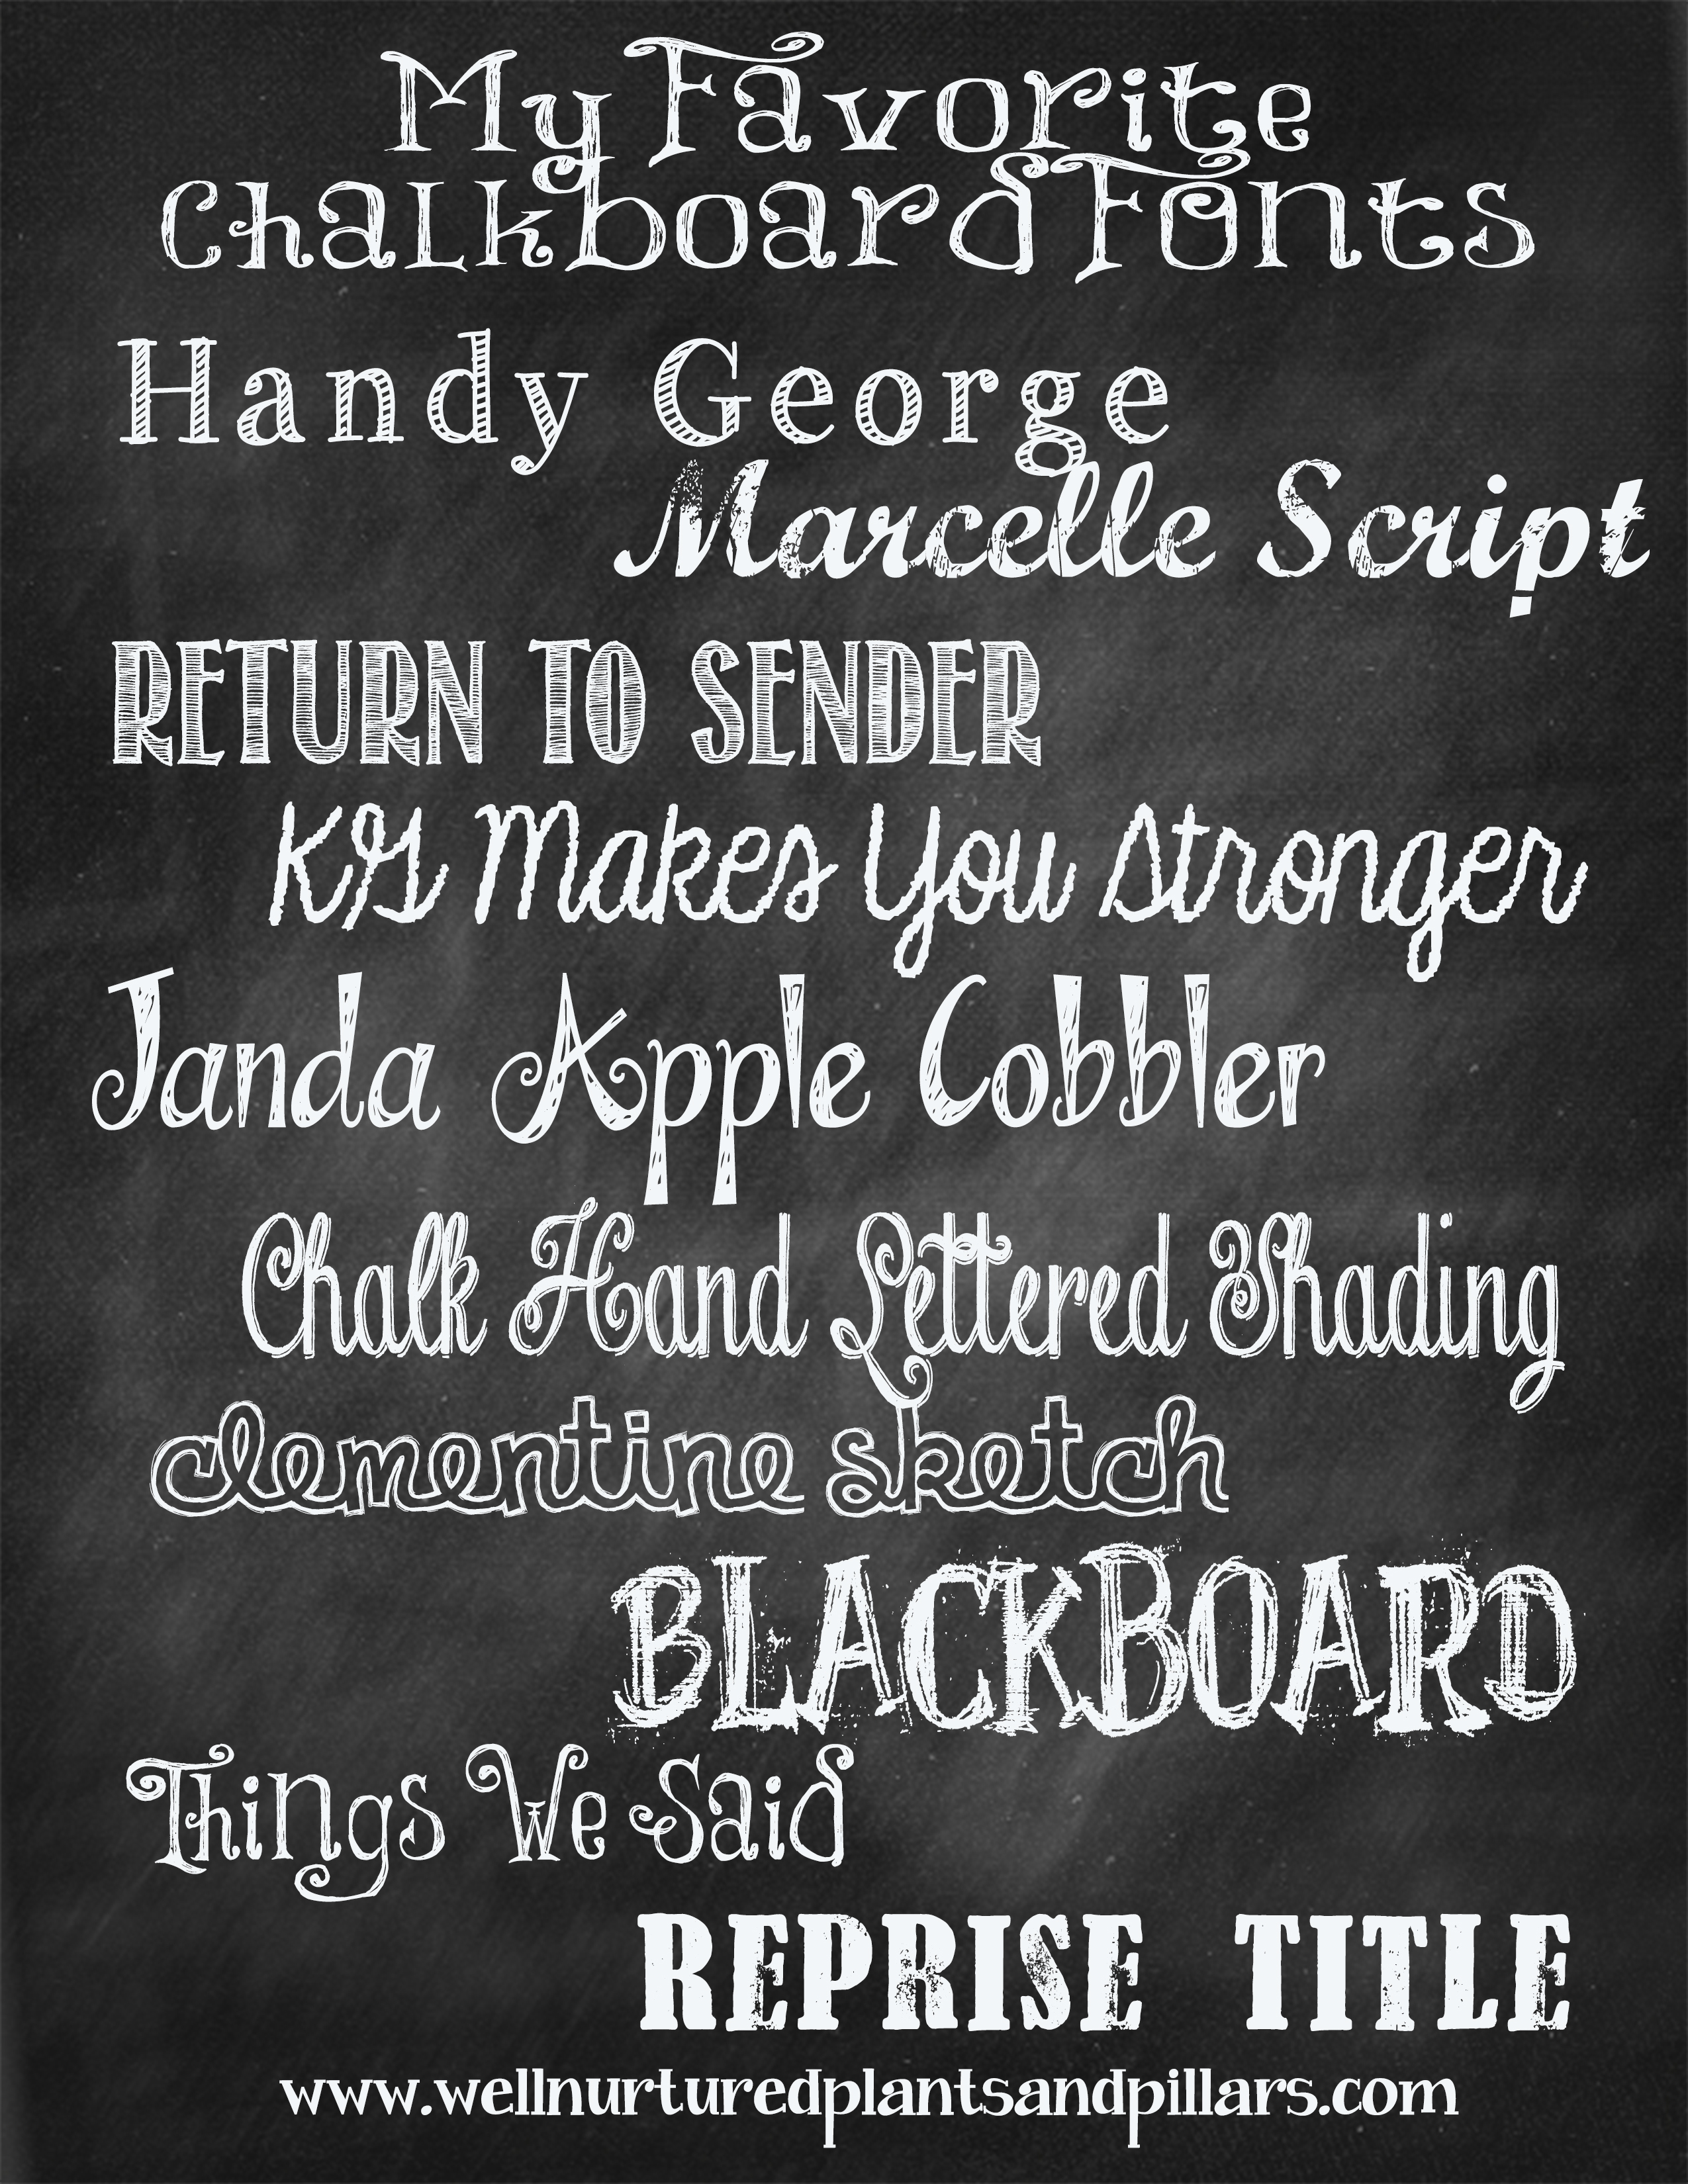 18 Favorite Chalkboard Fonts Images Printable Chalkboard Fonts Free